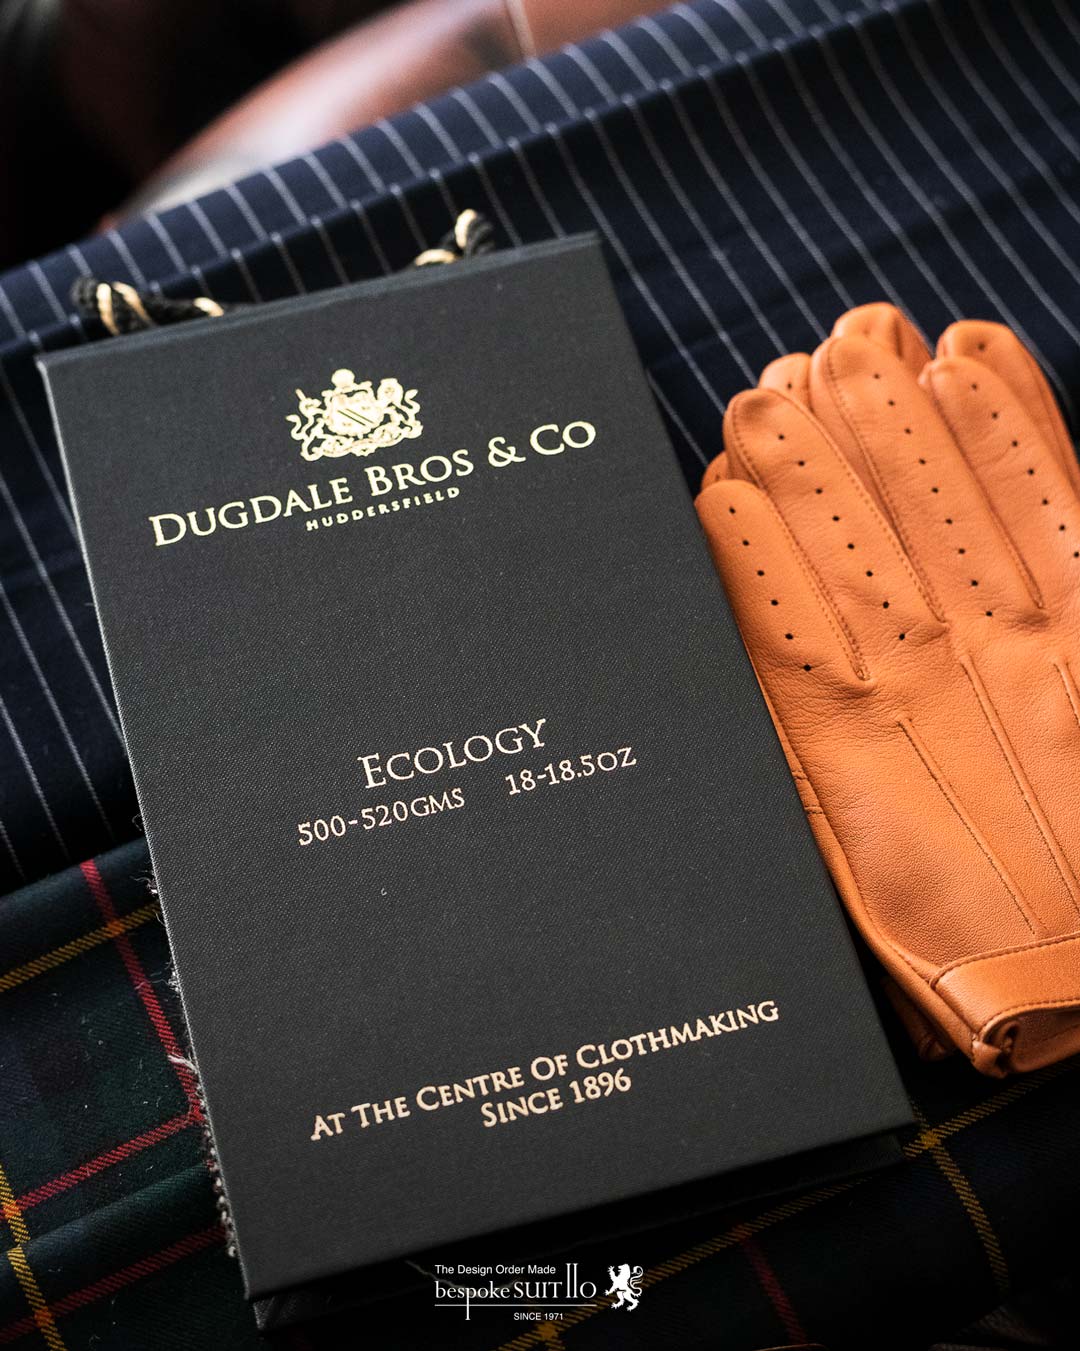 DUGDALE BROS（ダグデール ブラザーズ）ECOLOGY（エコロジー） 1896年、英国毛織産業の中心地でもあるハダースフィールドにて創業。現在も本拠地とするハダースフィールドは英国服地の一大産地。多種多様、高品質な服地を取り扱うマーチャントとしてその名を轟かす。スーパーファインのウーステッドから、コーデュロイ、キャバリー・ツィル、オーバーコートの服地まで幅広いラインナップを展開している。 アンダイド（未染色）ウールを使用したエコロジーコレクション。本来染色で嫌厭されがちなブラックシープ（黒毛の羊）も積極的に取り入れてた未染色ならではの優しい色合いの柄が魅力的です。福岡のオーダースーツ専門店のbespokeSUIT110,suit110